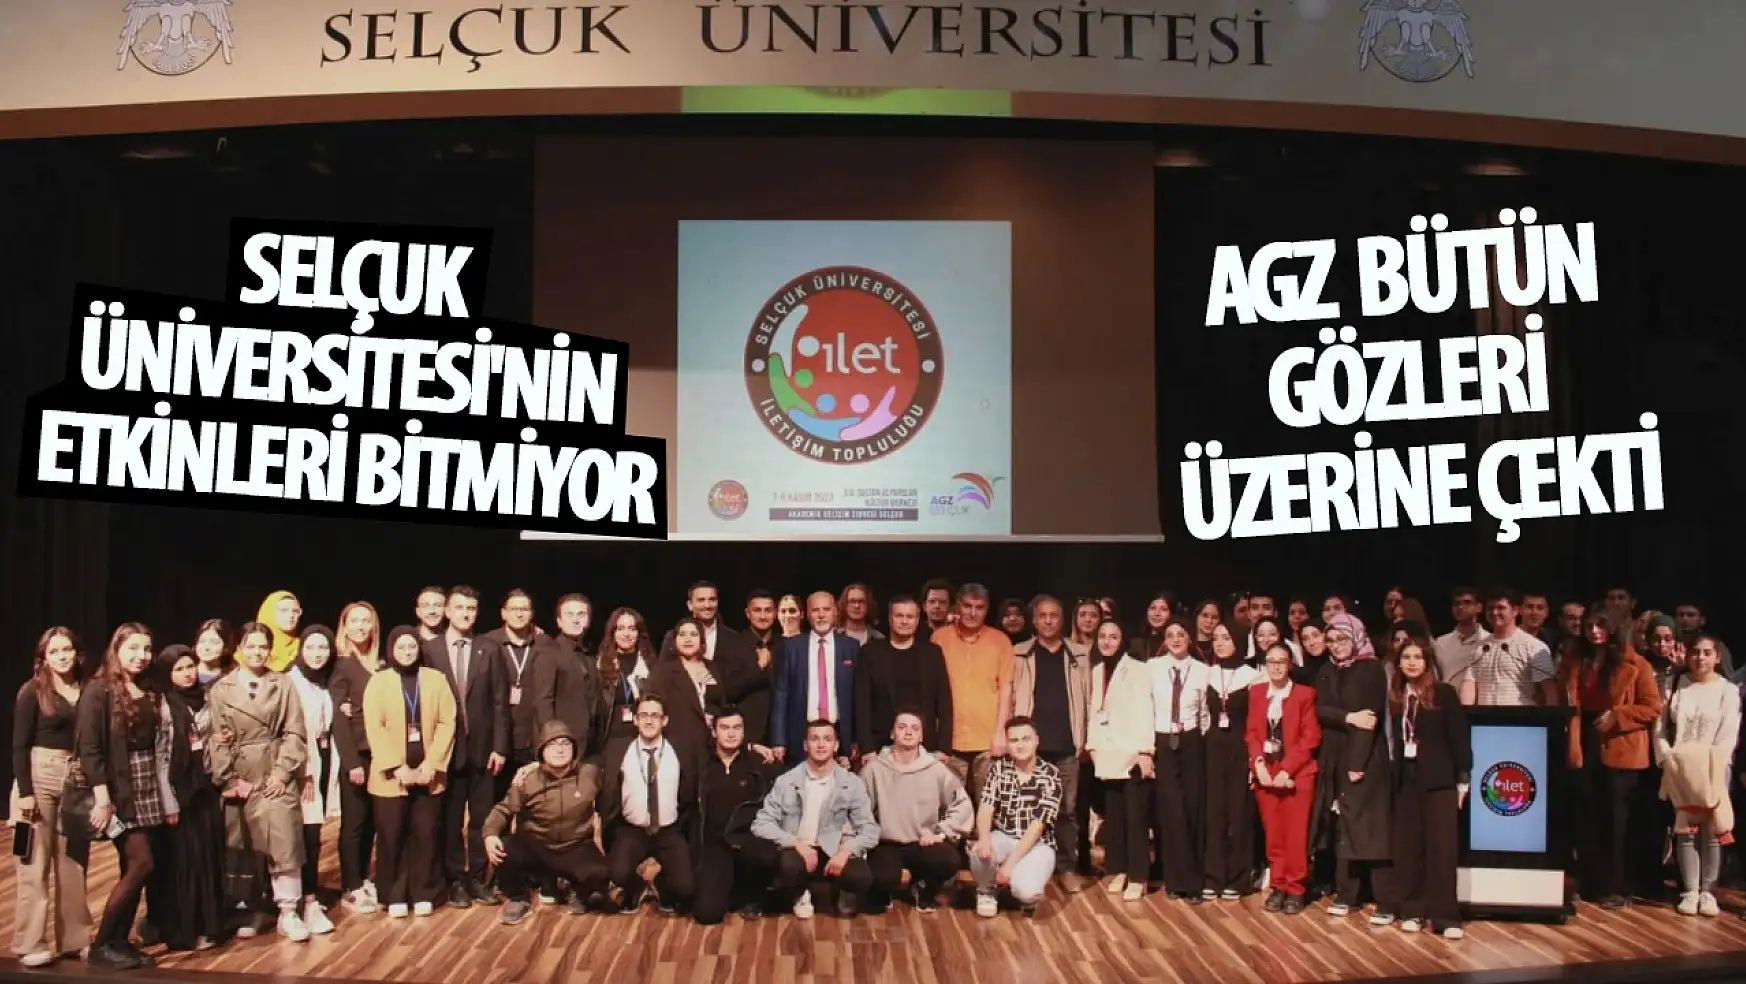 Selçuk Üniversitesi'nin etkinleri bitmiyor: AGZ bütün gözleri üzerine çekti! 